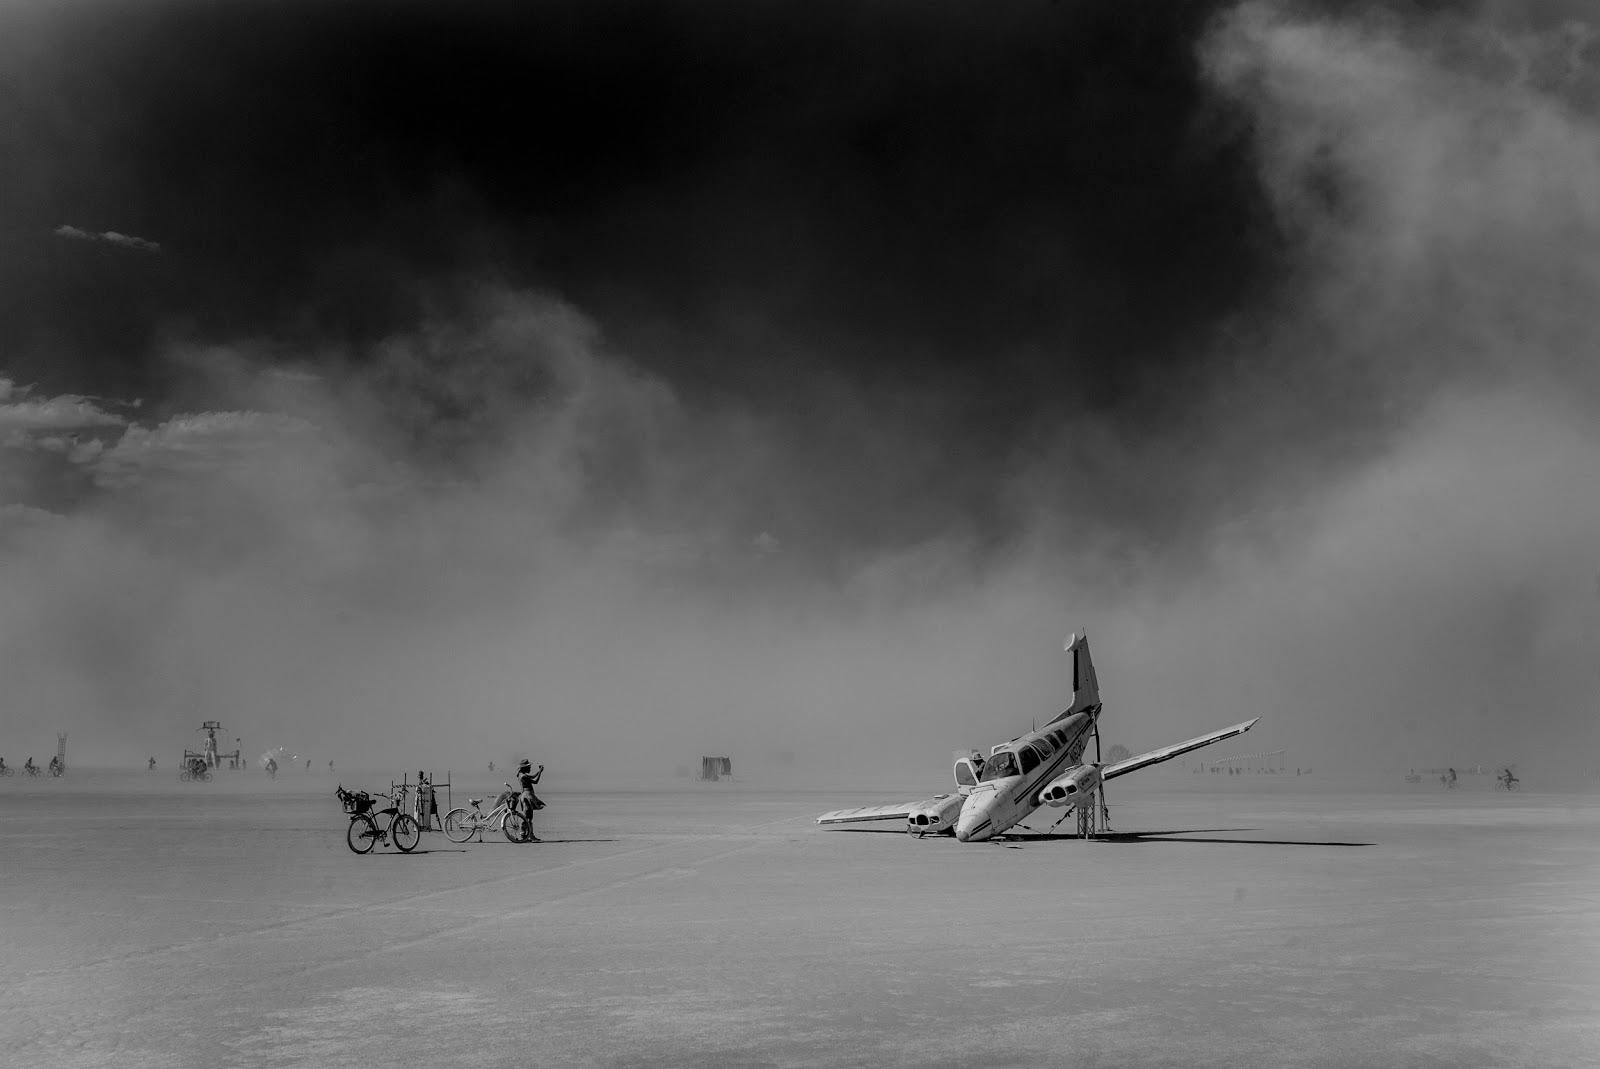 Tao Ruspoli Landscape Photograph – Plane Crash at Black Rock, 21. Jahrhundert, Landschaftsfotografie, Zeitgenössisch